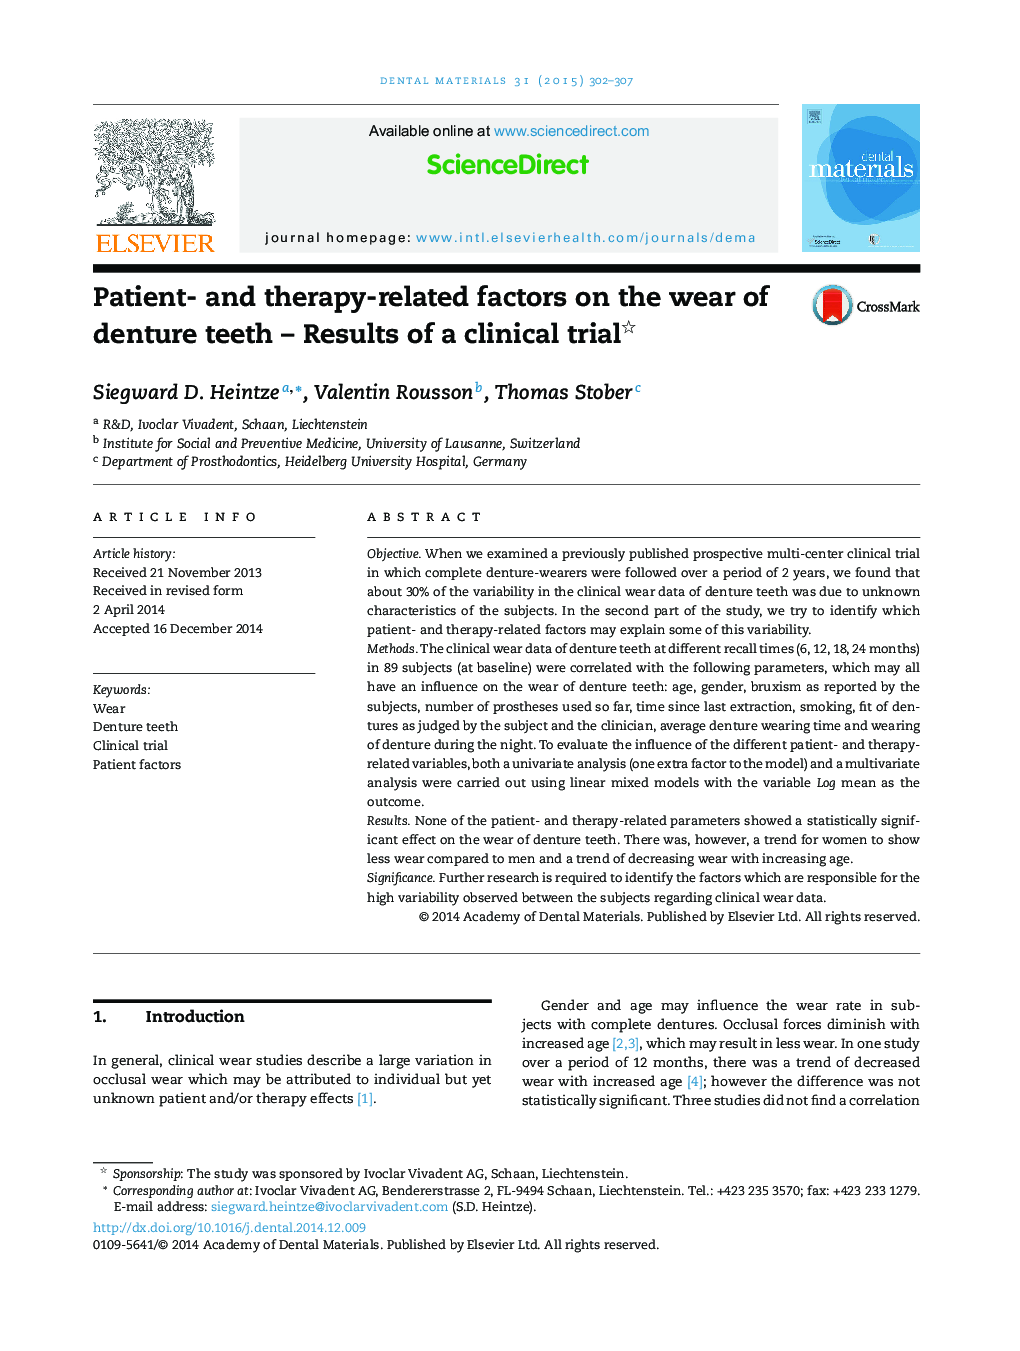 عوامل مرتبط با بیمار و درمان بر روی پوشیدن دندان مصنوعی؟ نتایج یک کارآزمایی بالینی 